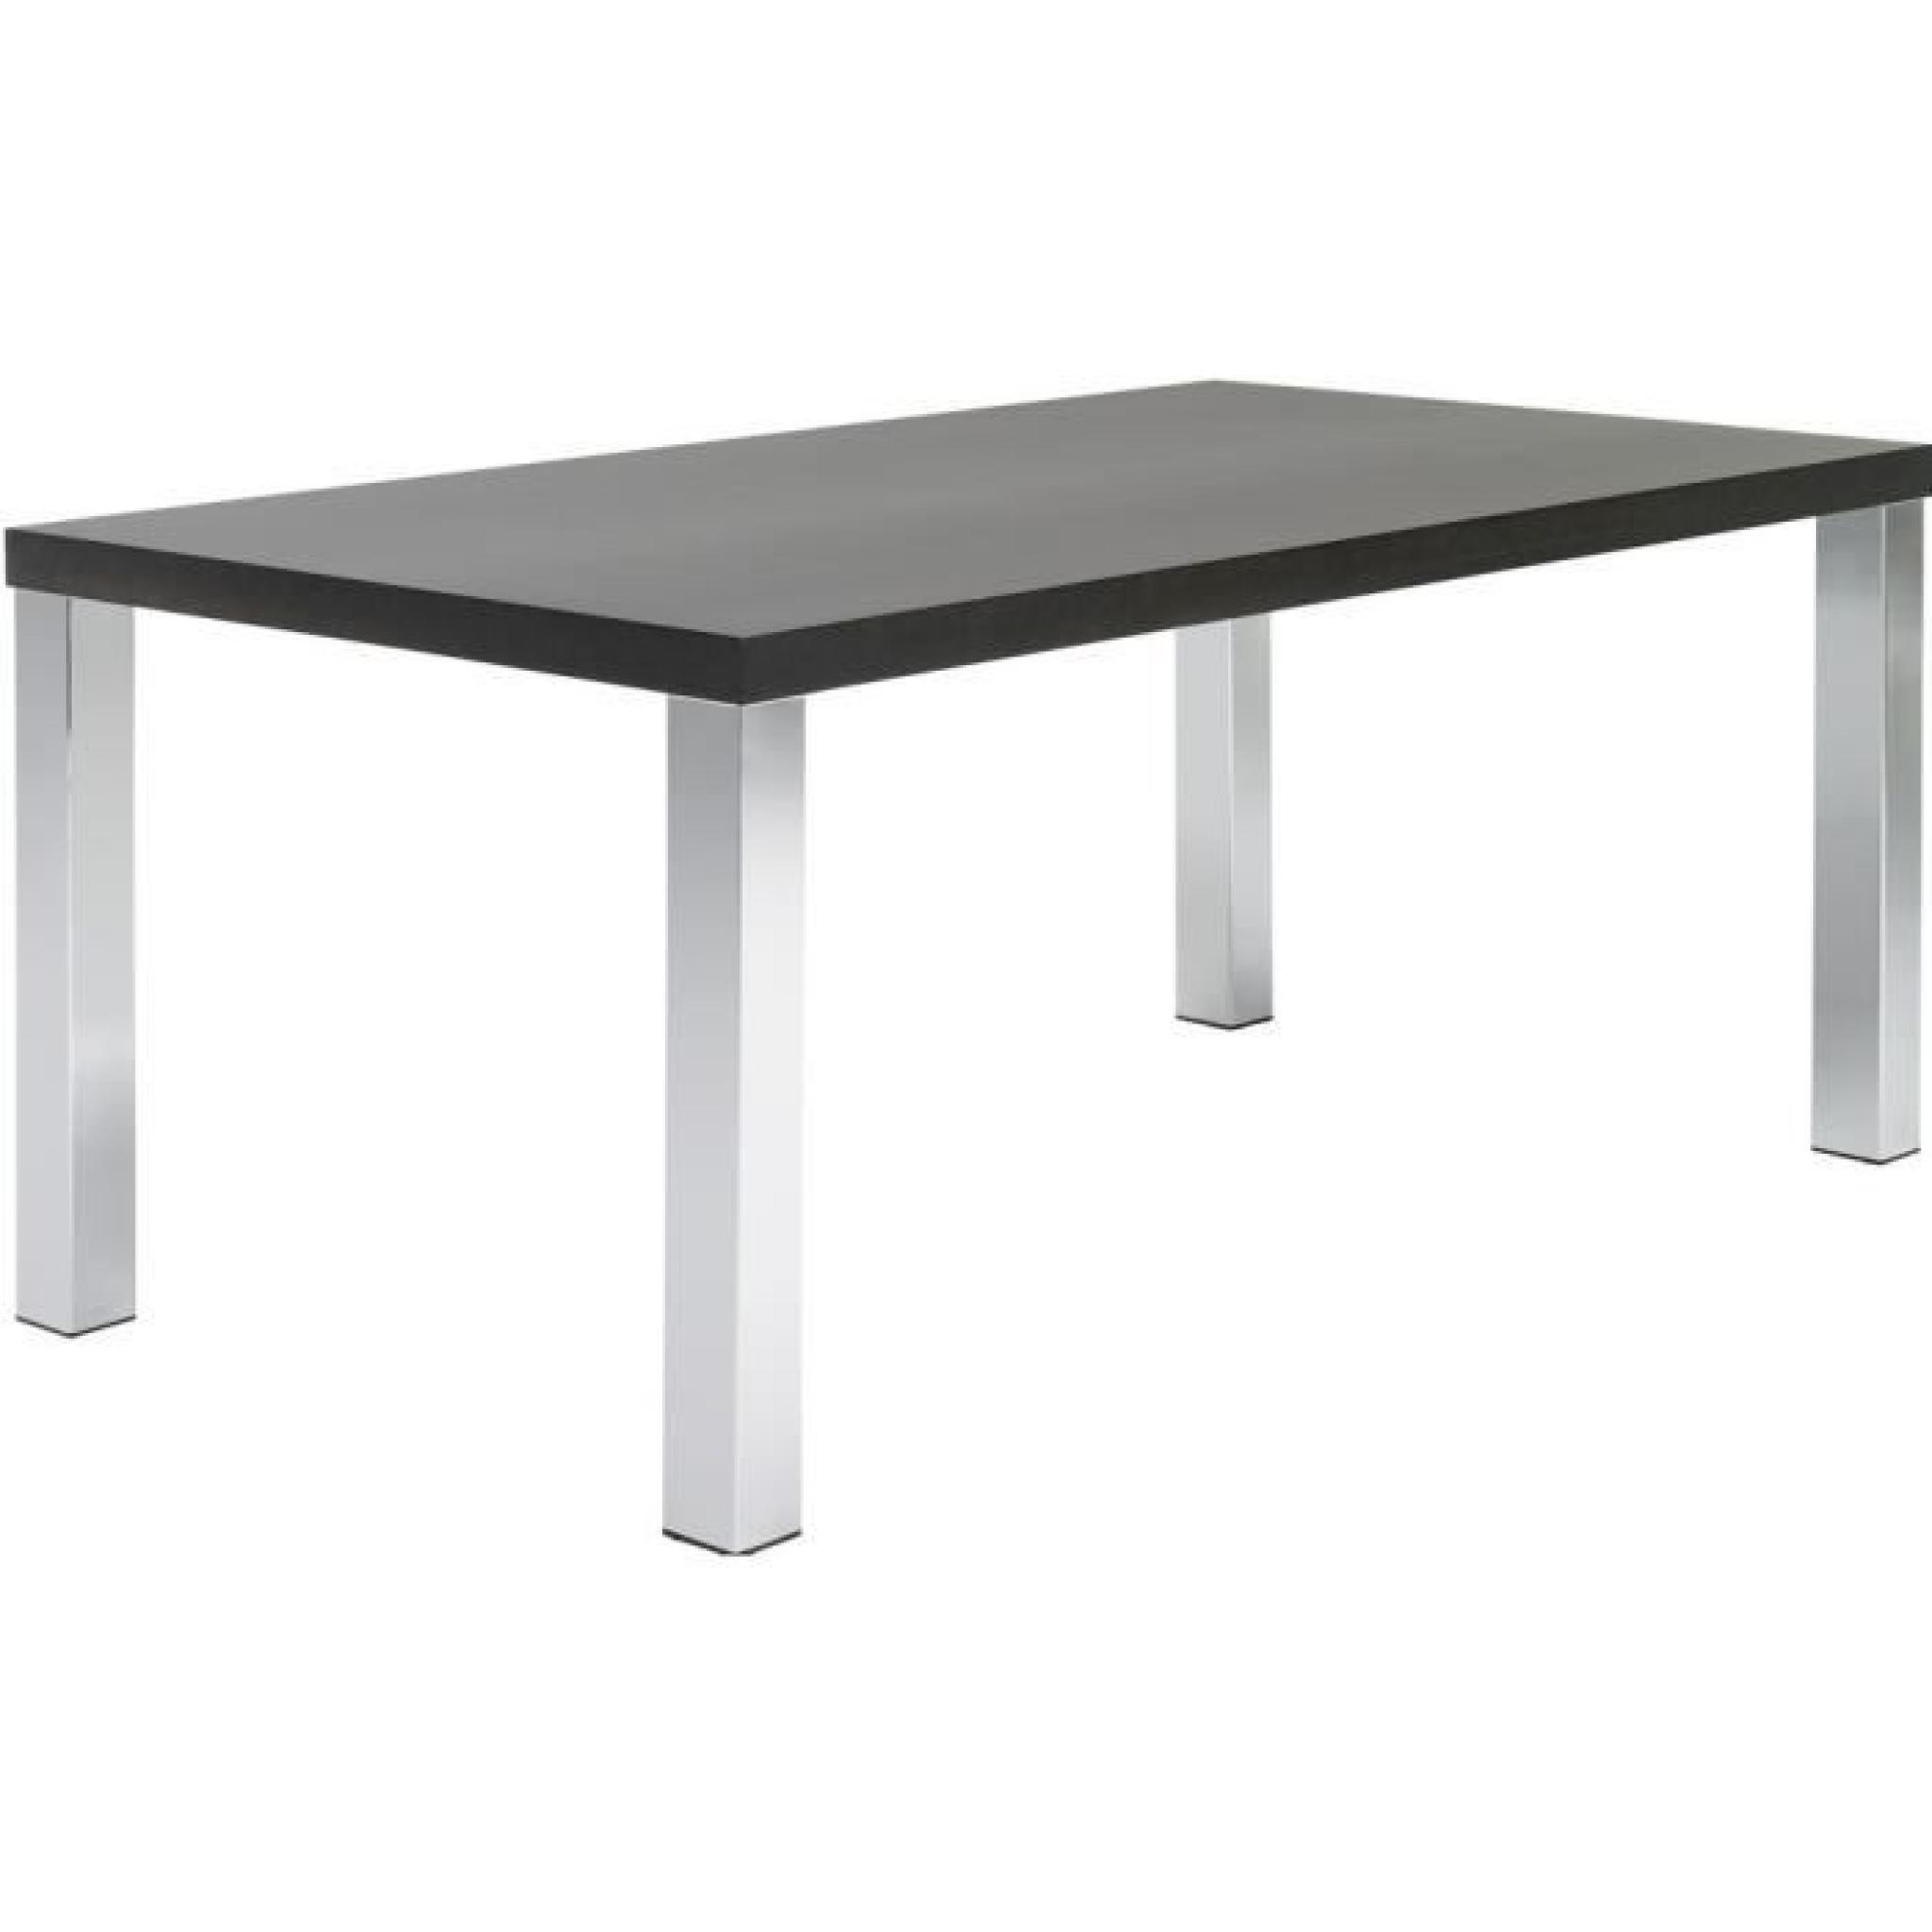 Table rectangulaire 200 cm wengué avec pieds chromés Kate Couleur Wengue texturé Matière. Panneaux de particules